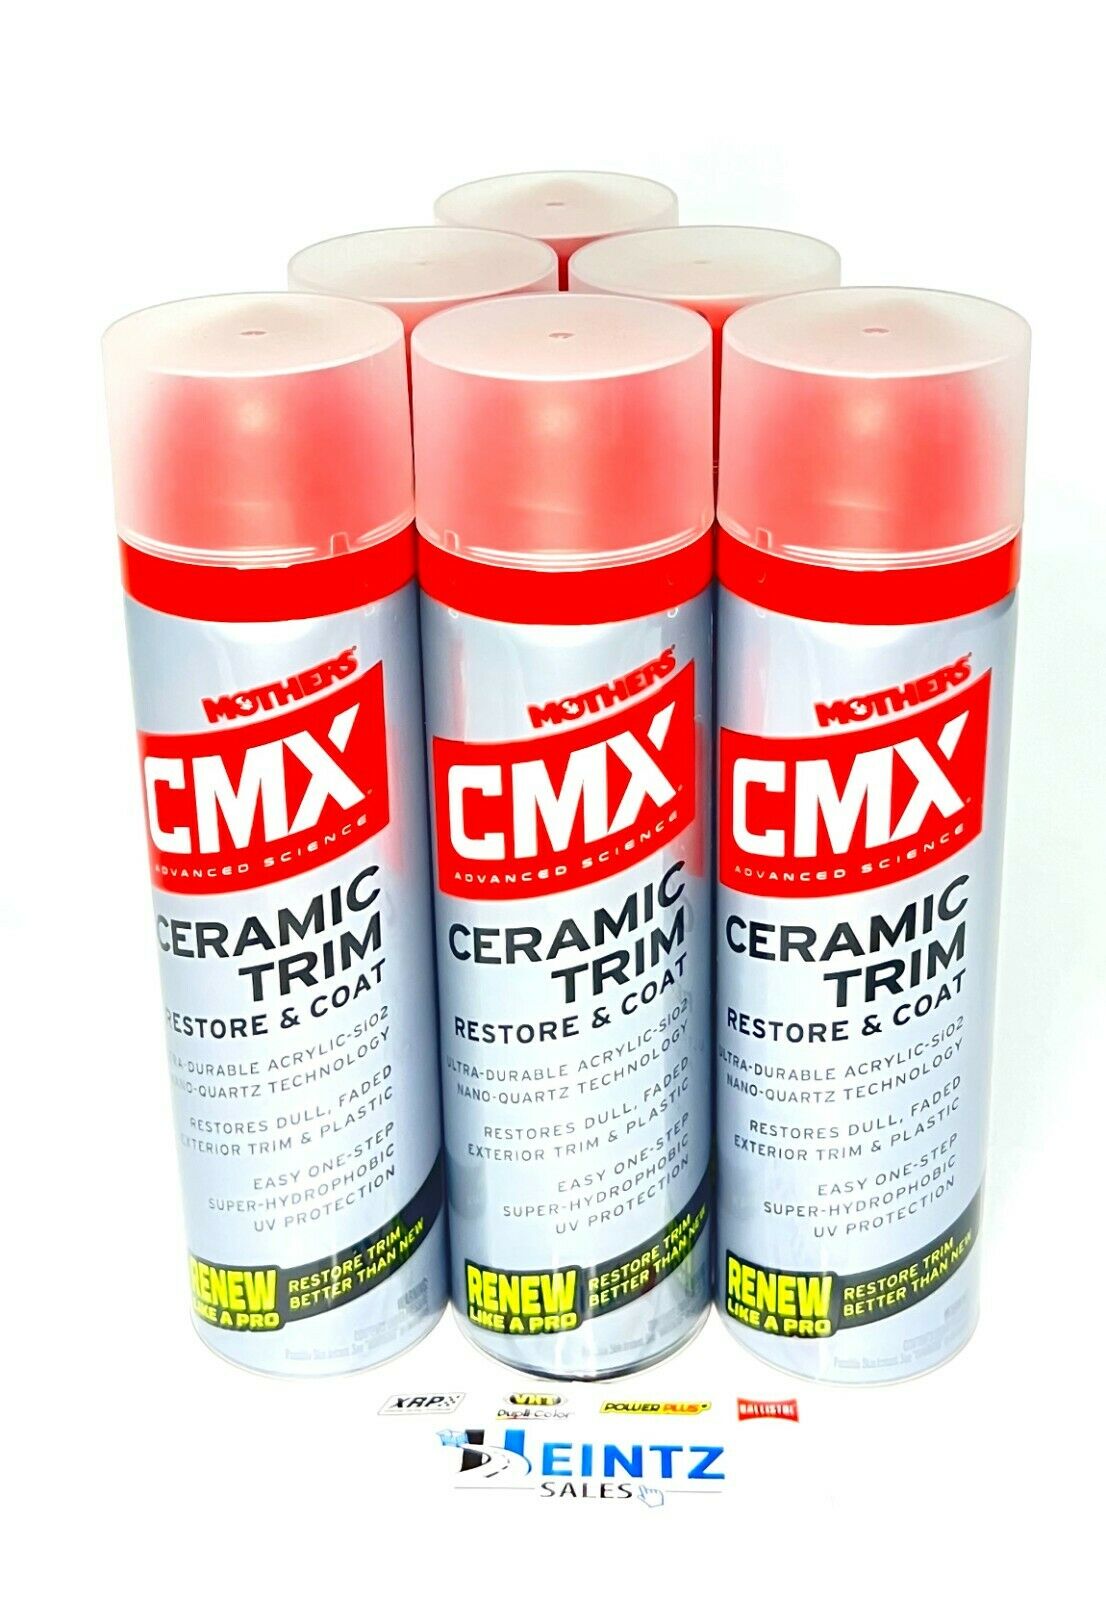 MOTHERS 01300 CMX Ceramic Trim Restore & Coat 6 PACK - Heat Resistant - 6.7 oz.